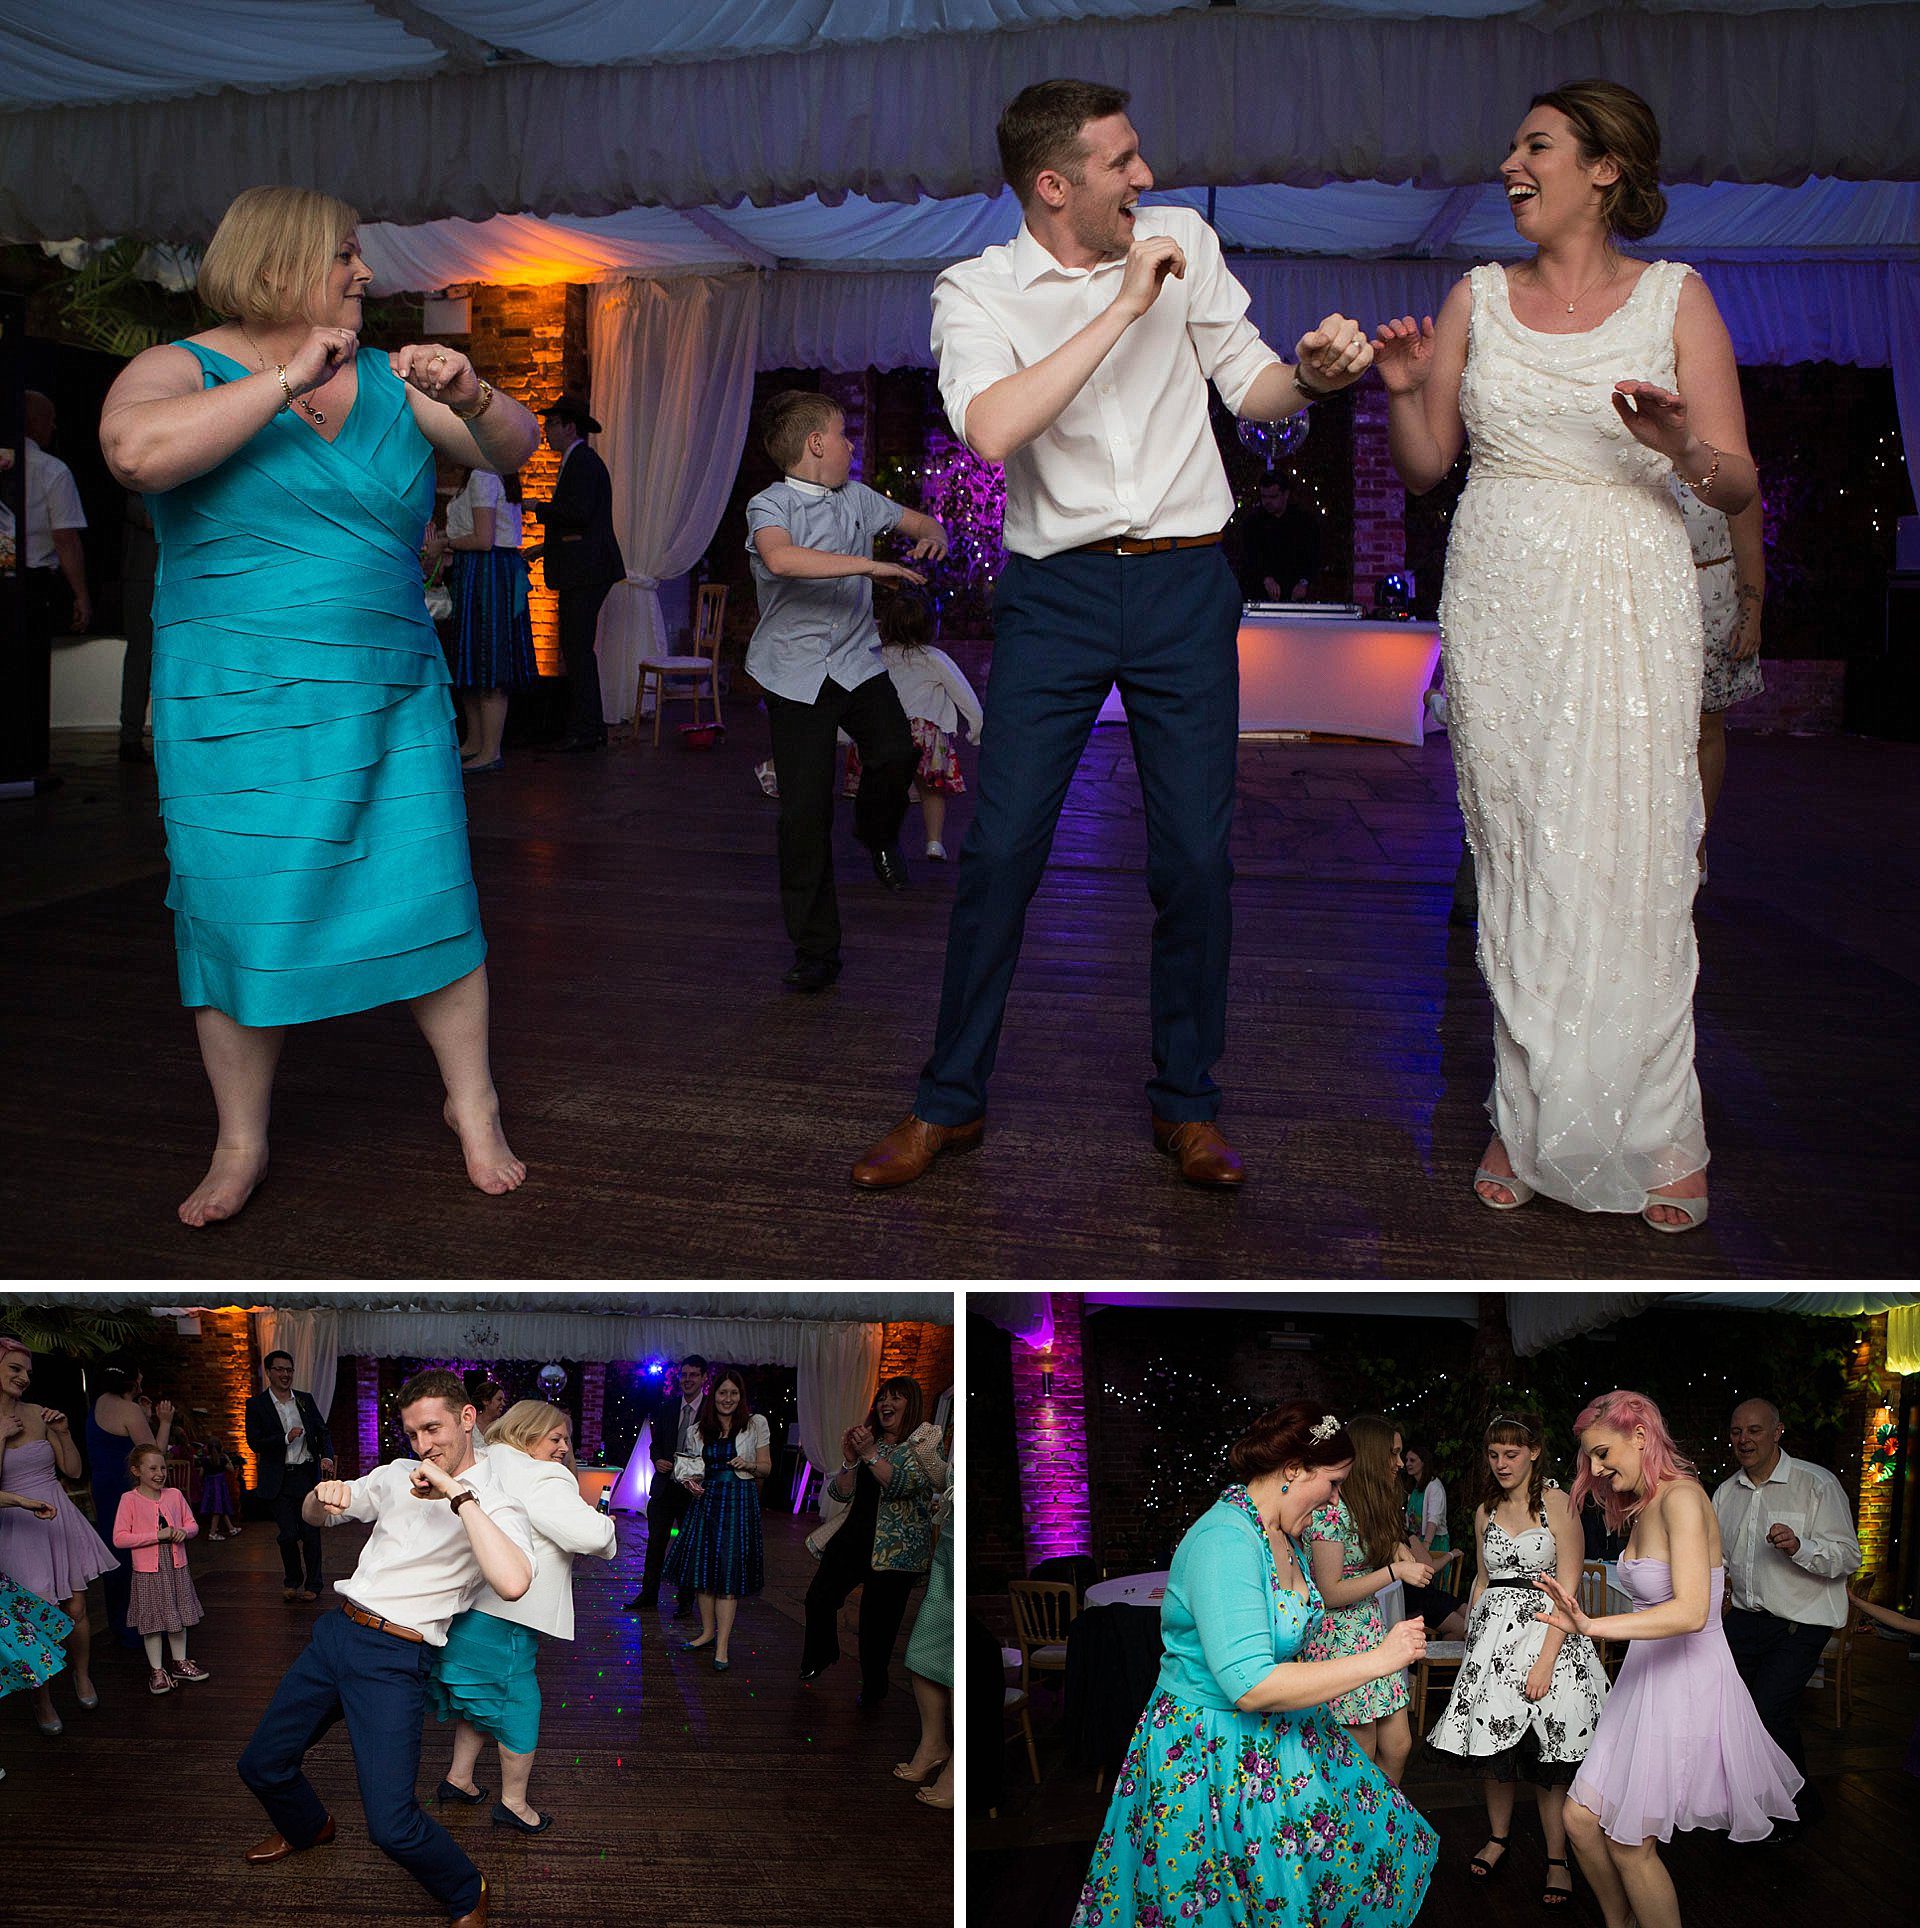 Surrey wedding photography - dancing